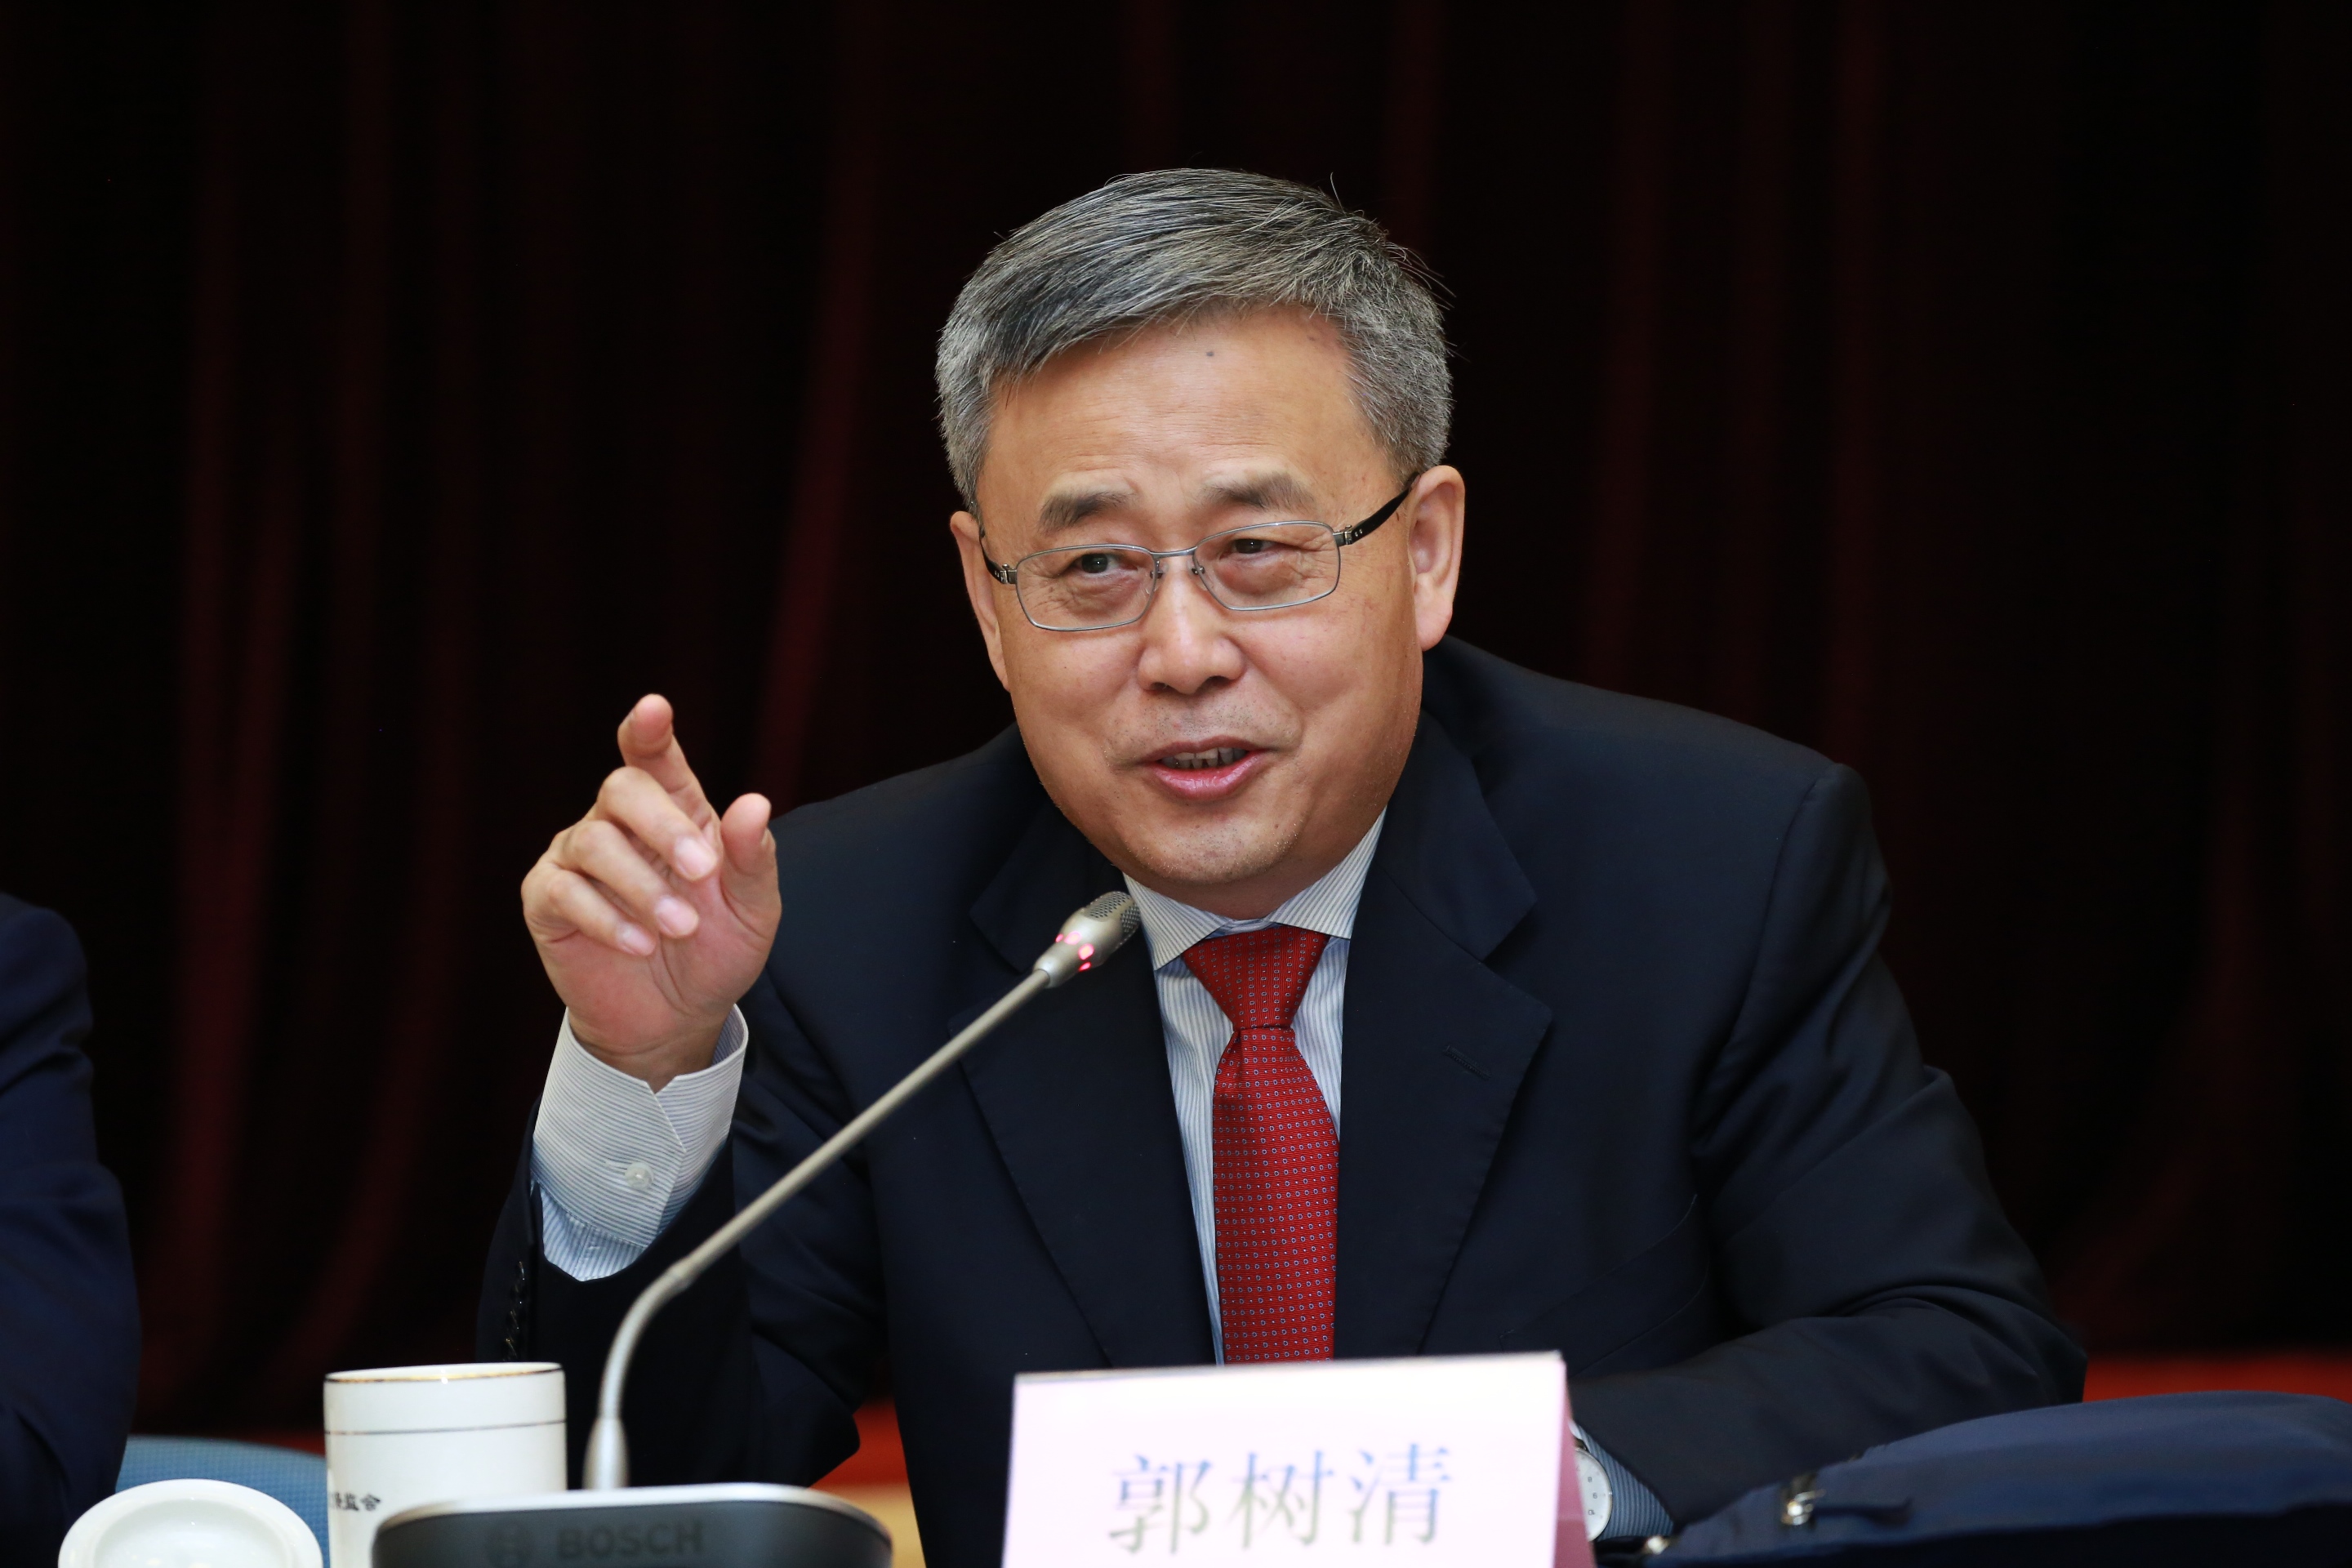 中国银保监会主席郭树清出席座谈会与与会者交流。